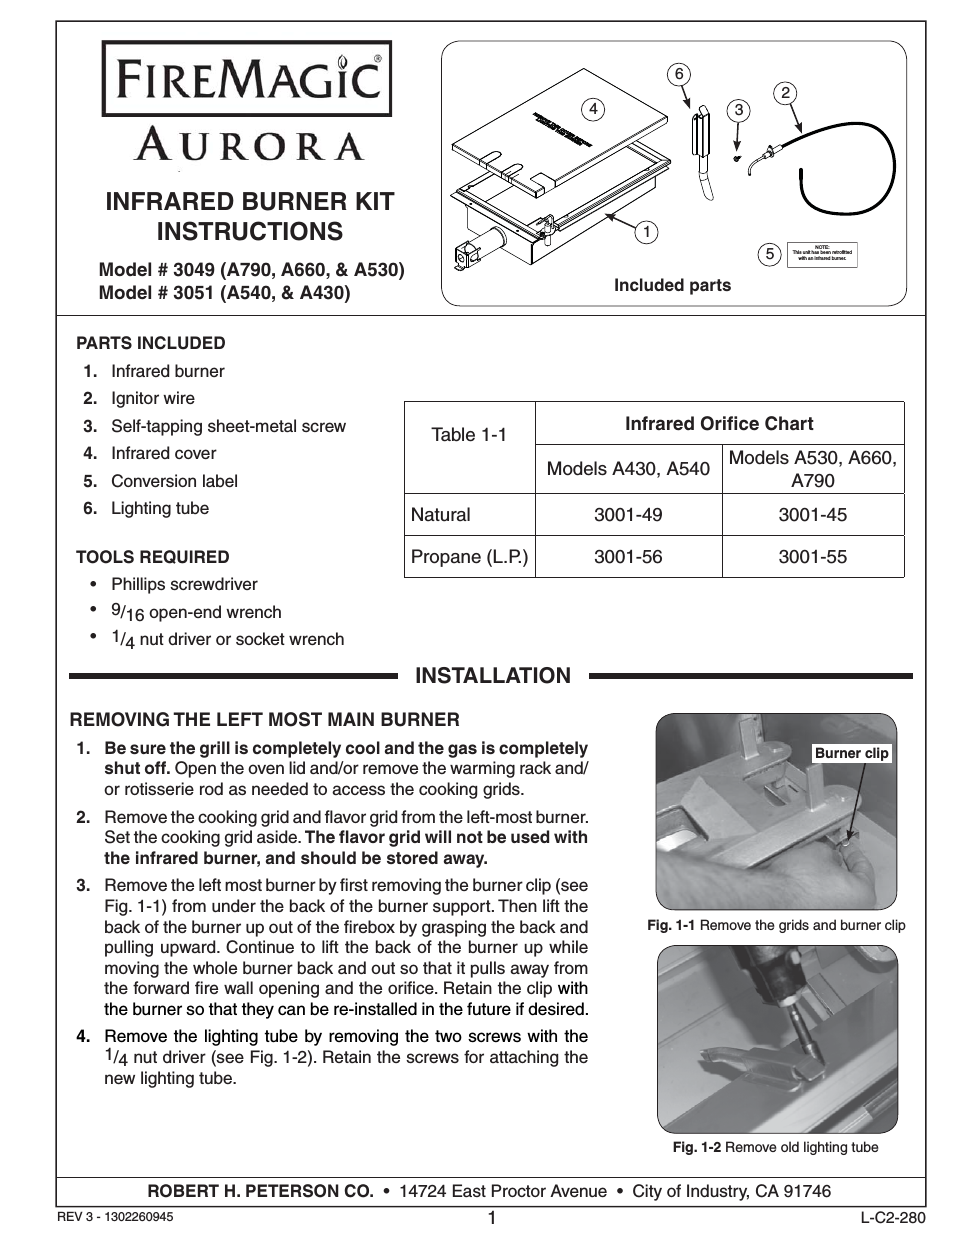 3051 Aurora Infrared Burner Kit Installation